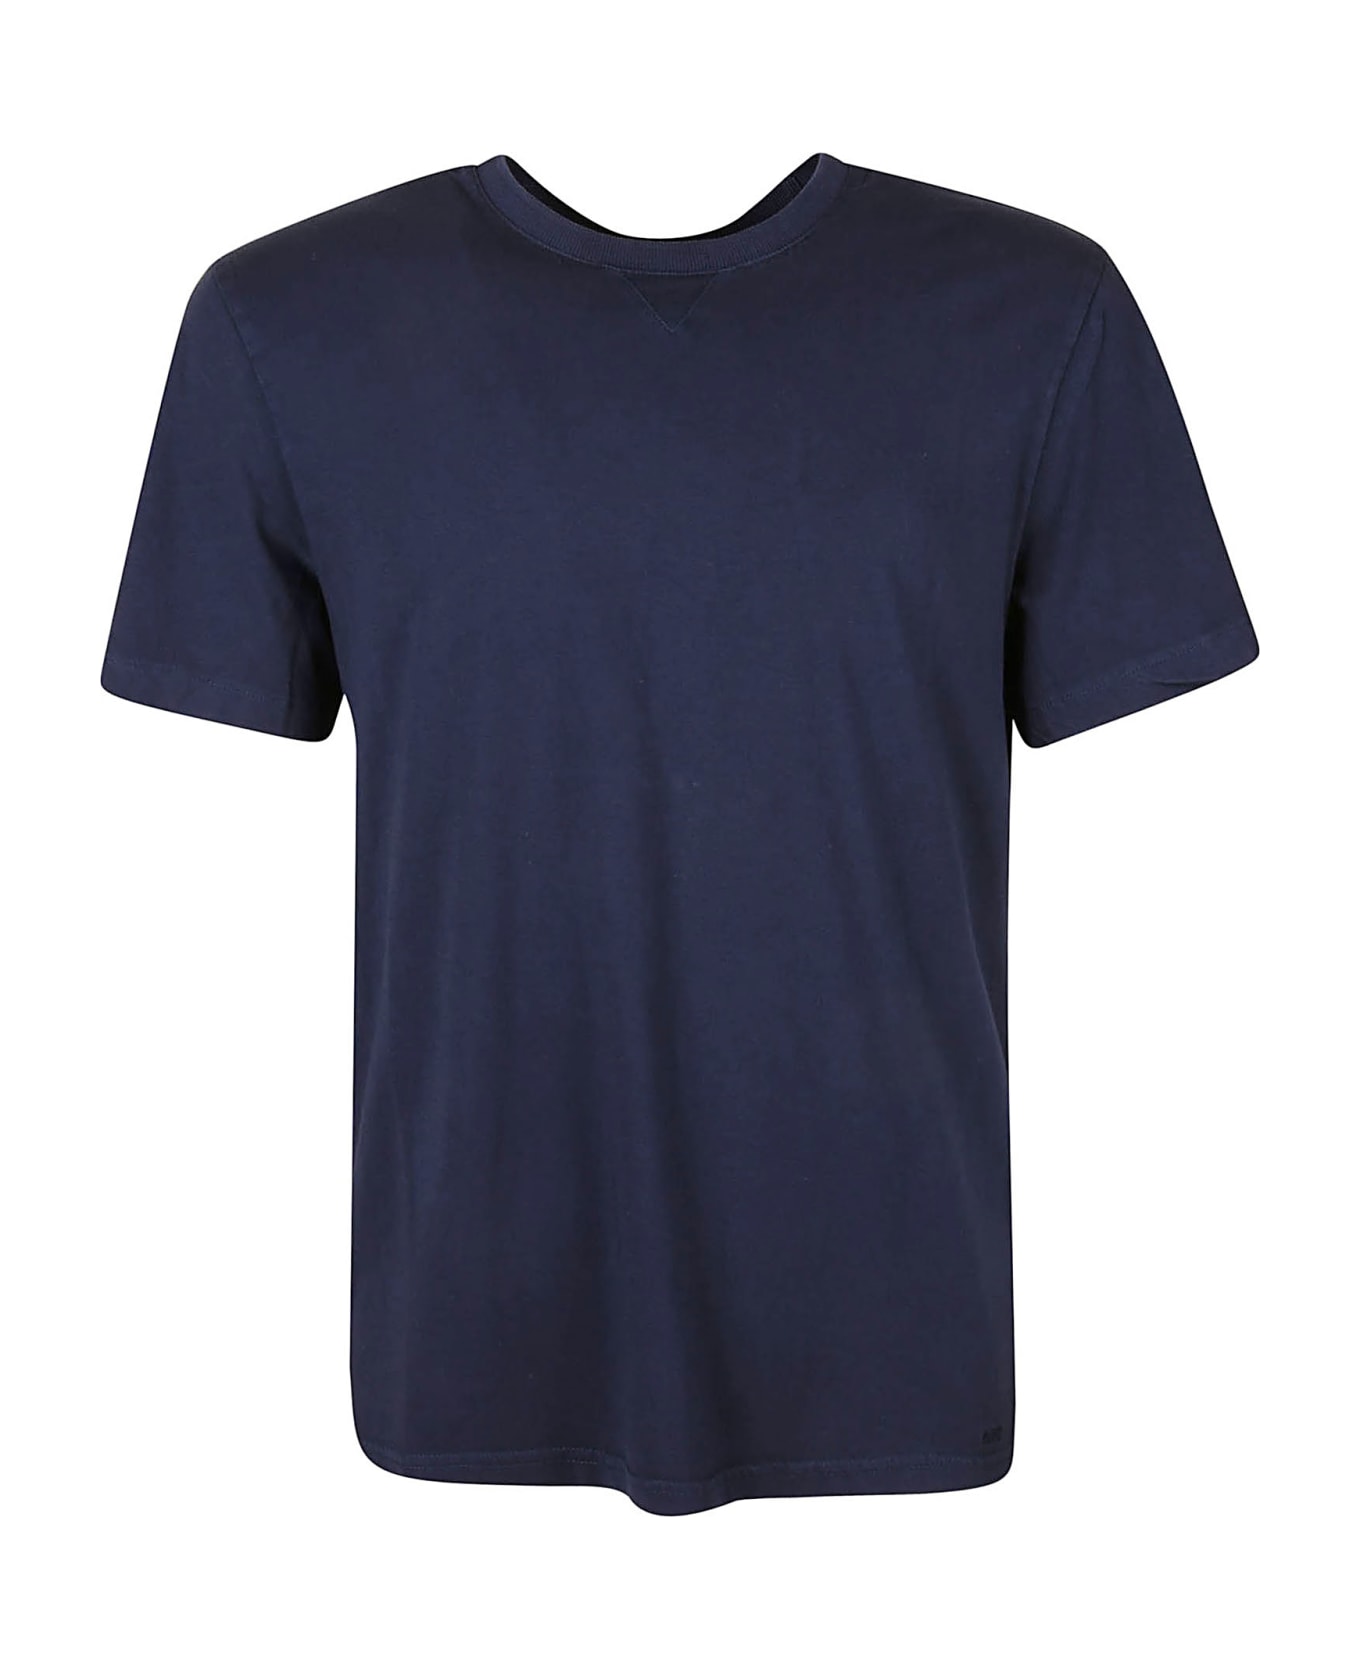 Michael Kors Spring 22 T-shirt - Midnight シャツ